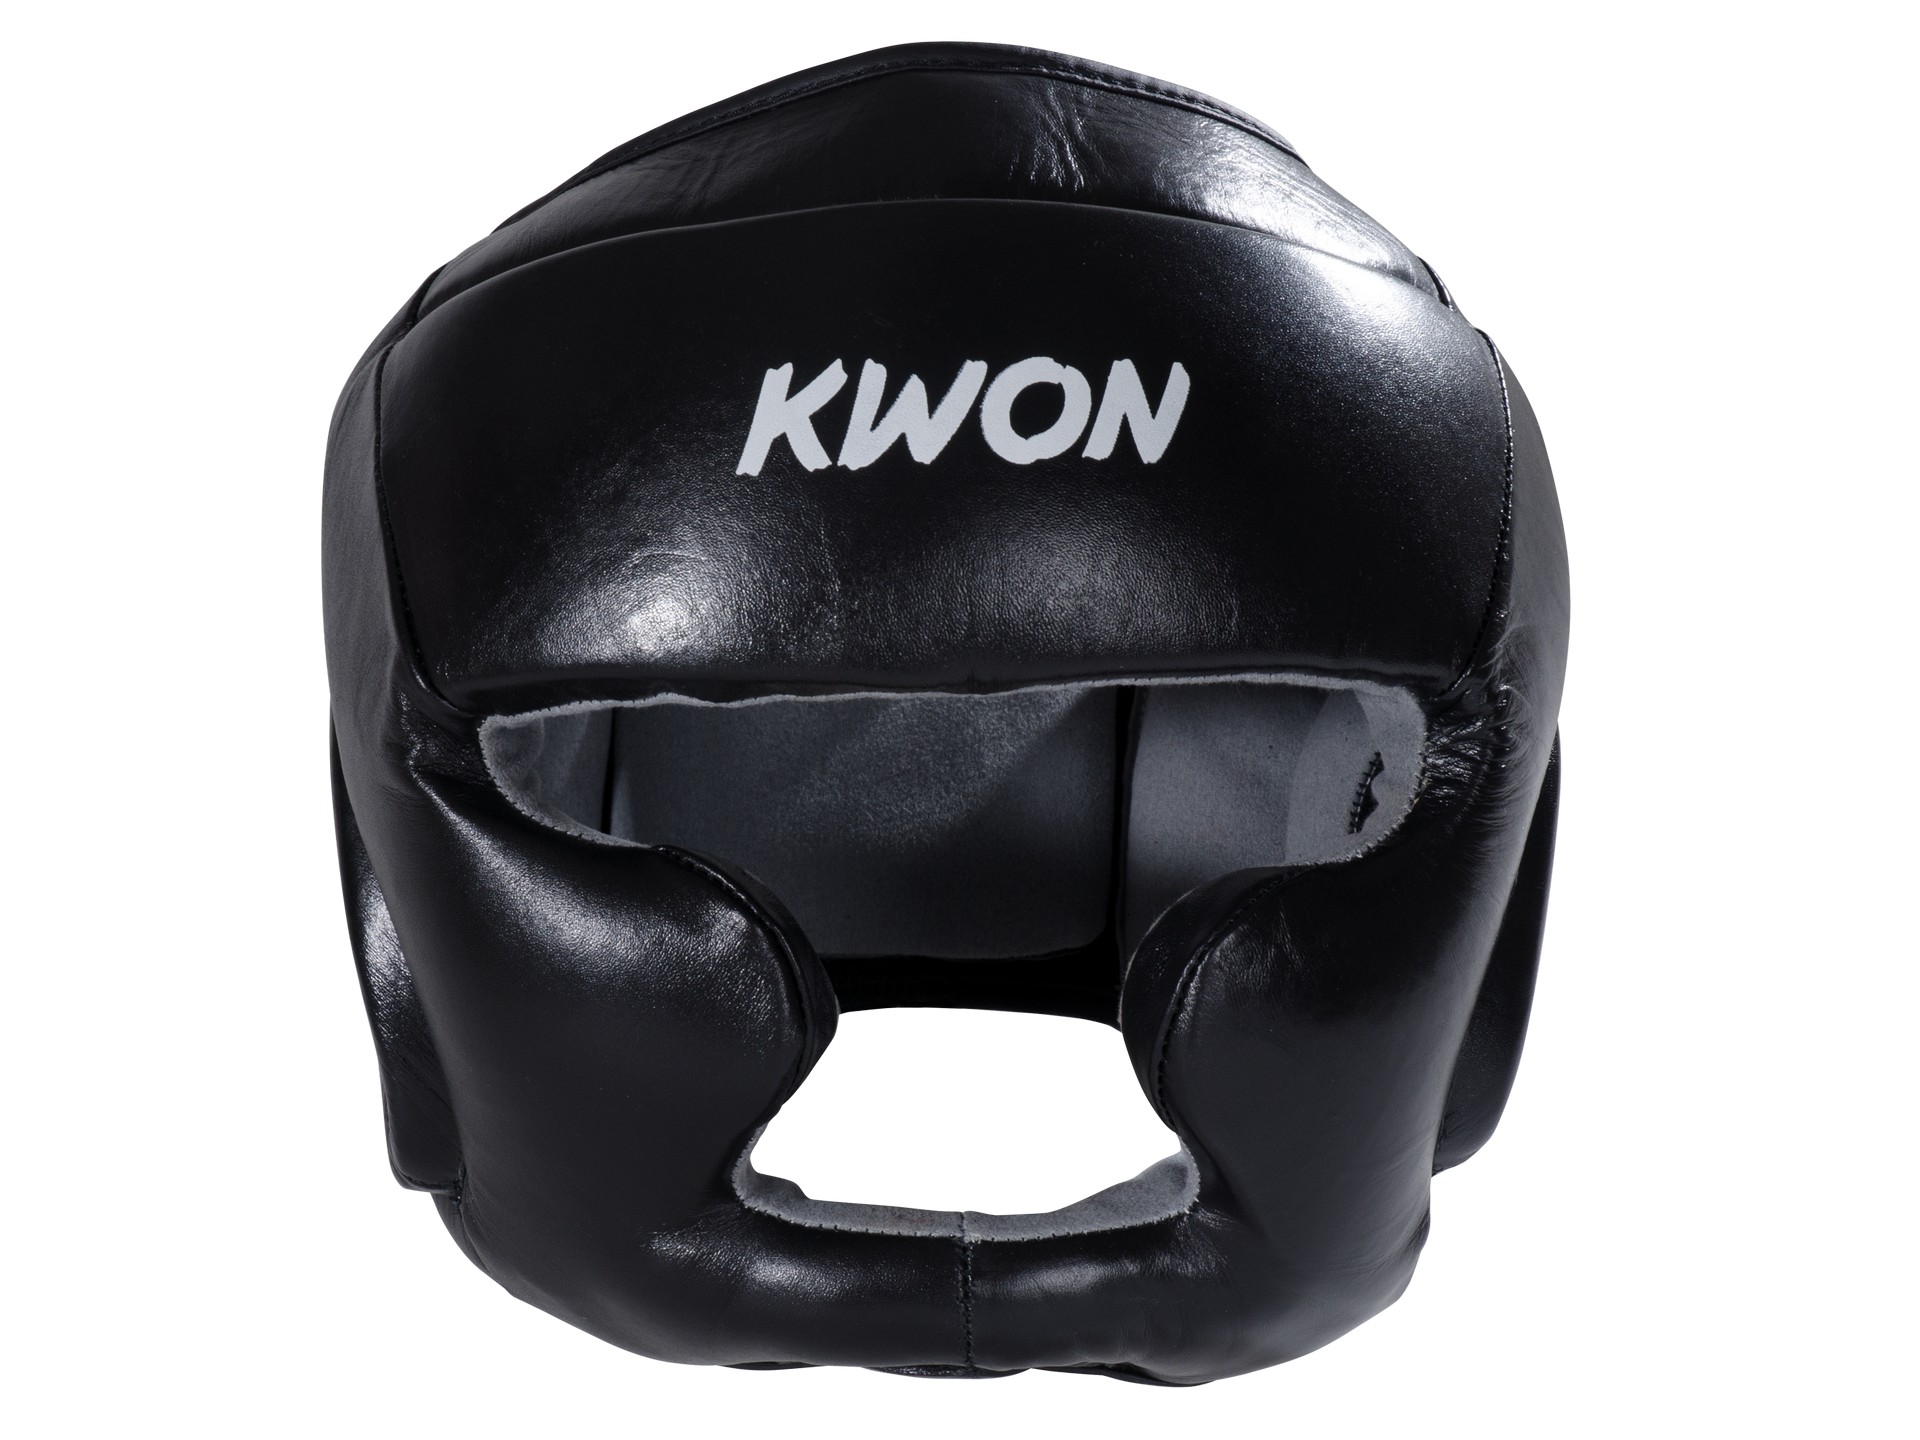 Twins Kopfschutz Boxen HGL3 Leder schwarz, günstig und direkt aus Thailand